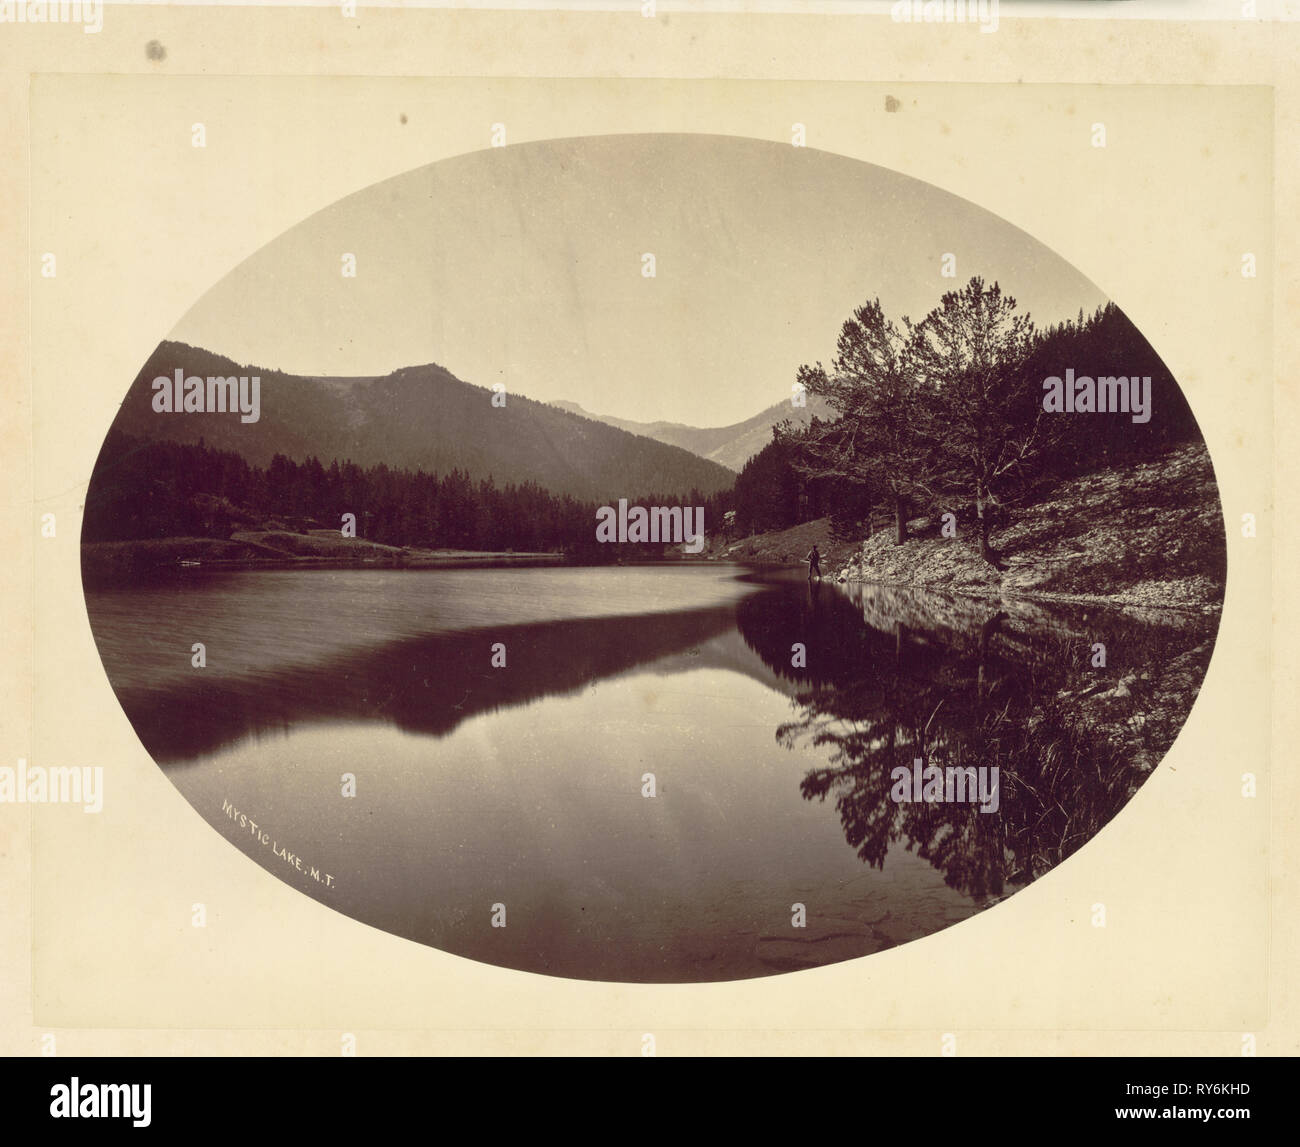 24 6 1942 fotografías e imágenes de alta resolución - Alamy